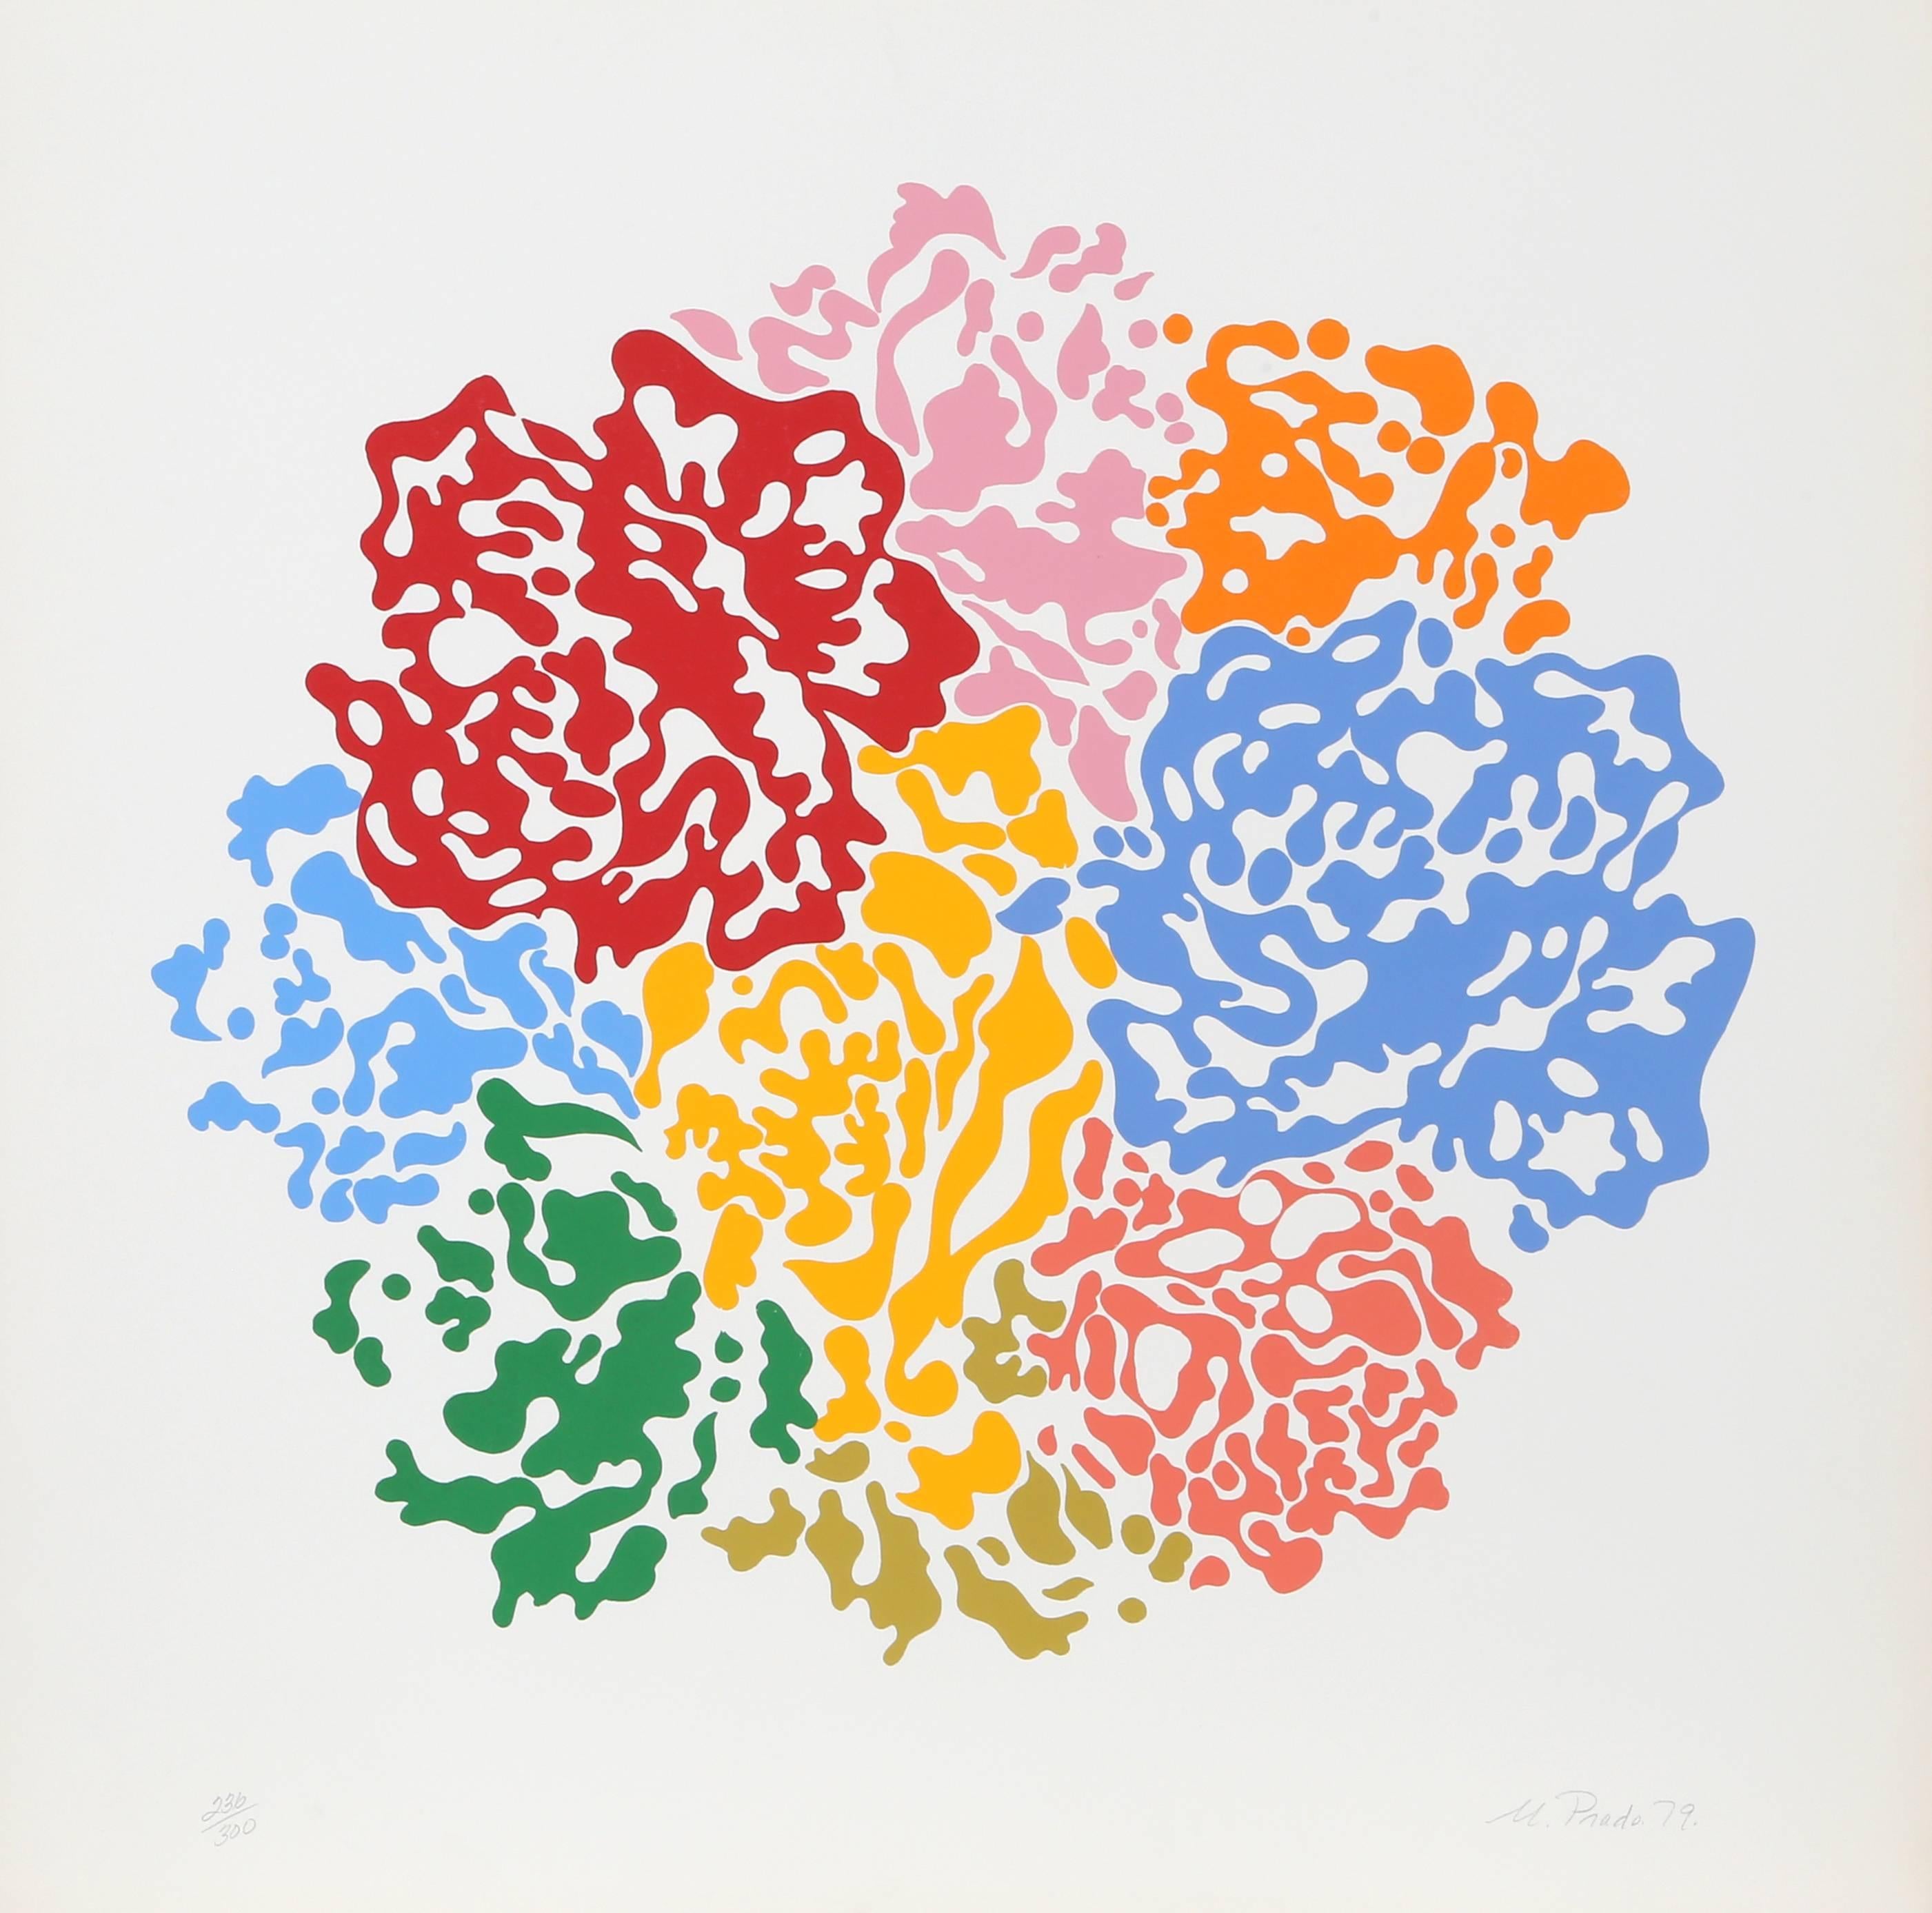 Artistics : Nadine Prado
Titre : Bouquet de fleurs
Année : 1979
Médium : Sérigraphie, signée et numérotée au crayon.
Edition : 300, 25 AP
Format du papier : 76,2 cm x 76,2 cm (30 in. x 30 in.)